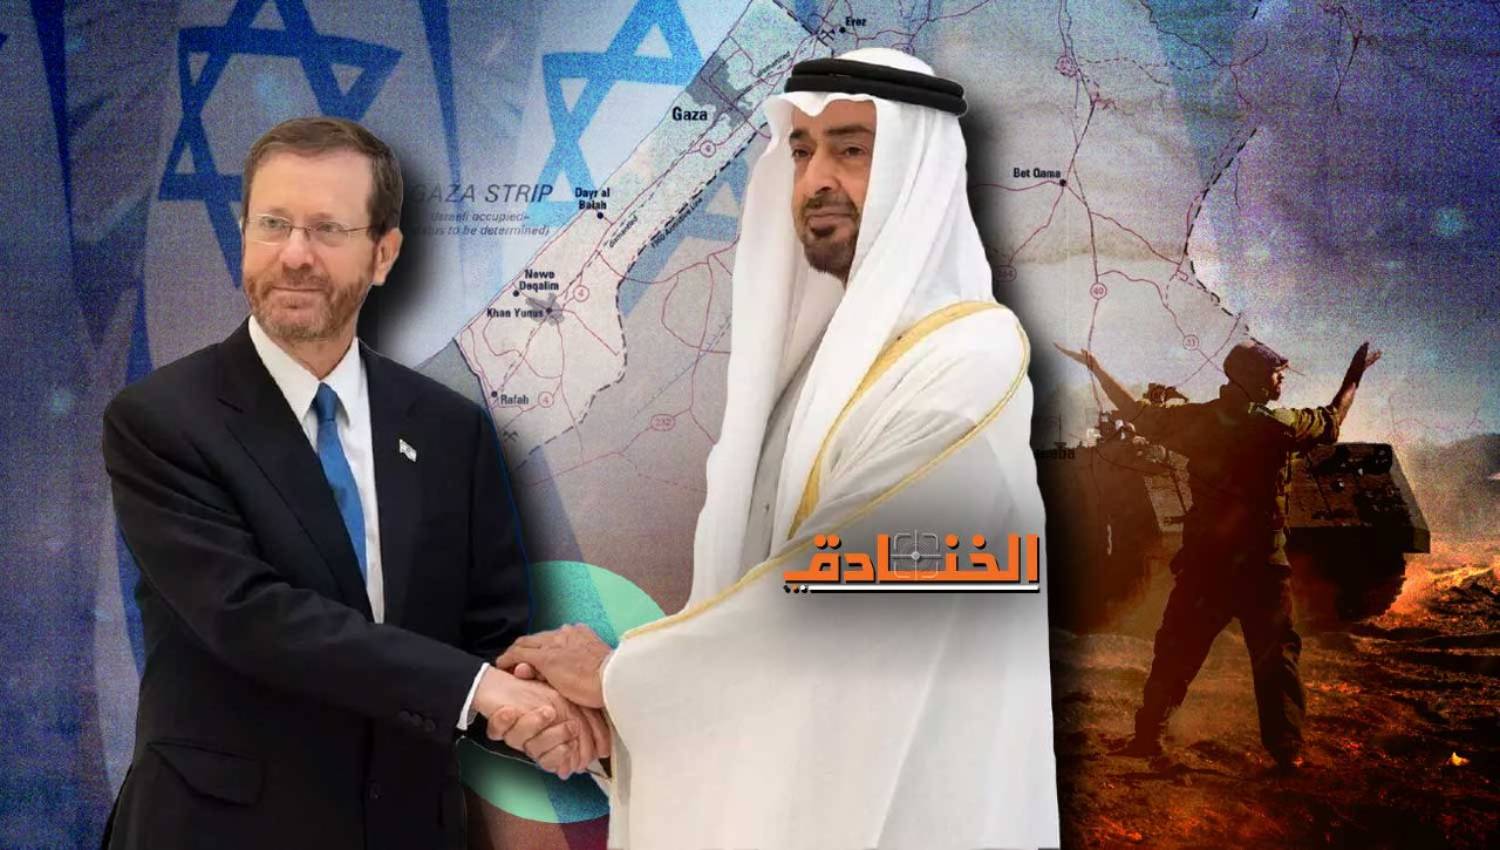 واشنطن بوست: الإمارات تحاول تنفيذ "نسخة إبراهيمية" في غزة